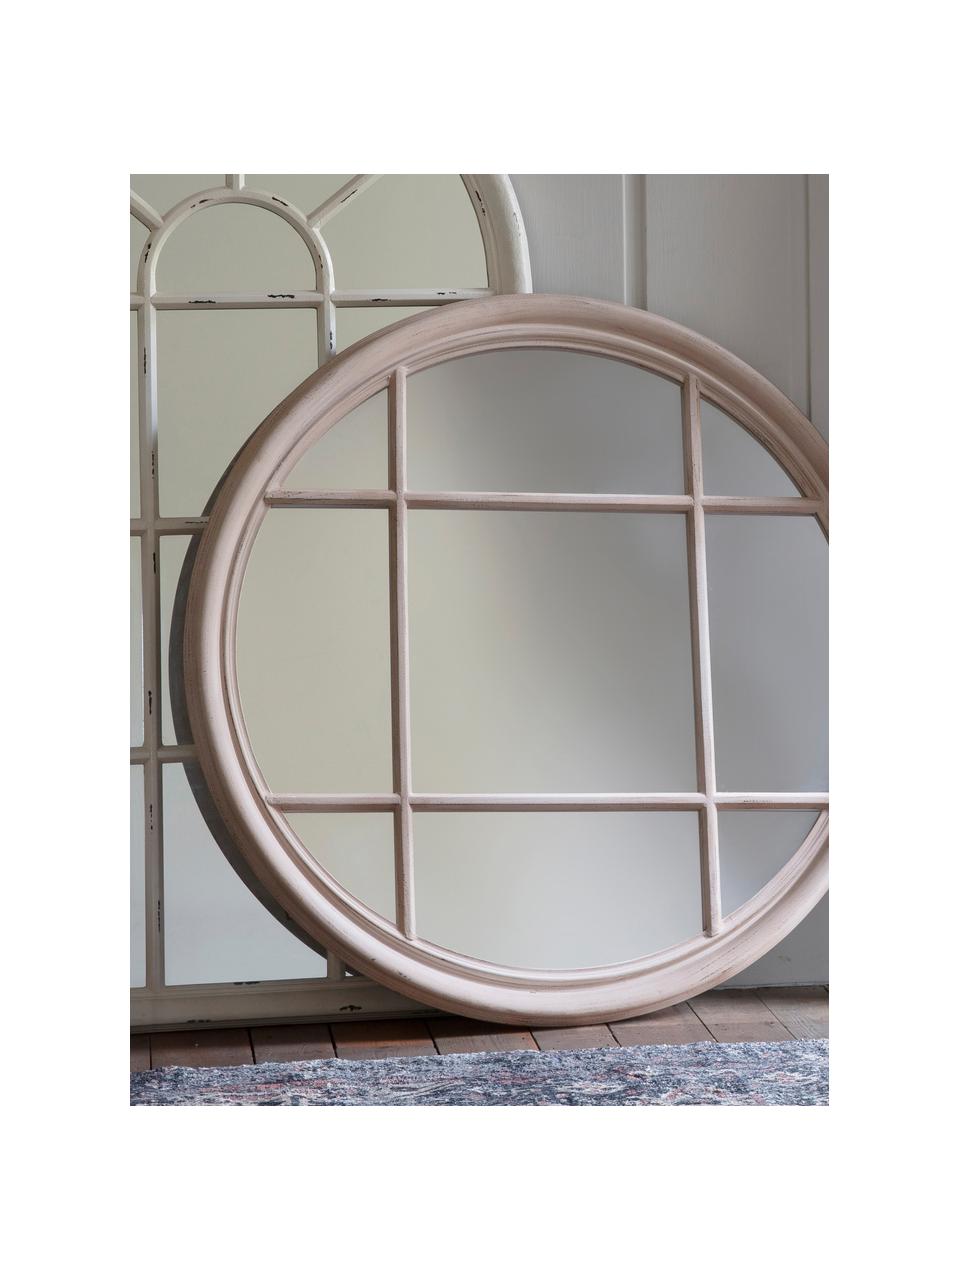 Specchio rotondo da parete Eccleston, Cornice: legno, verniciato, Superficie dello specchio: lastra di vetro, Greige, Ø 100 x Prof. 4 cm